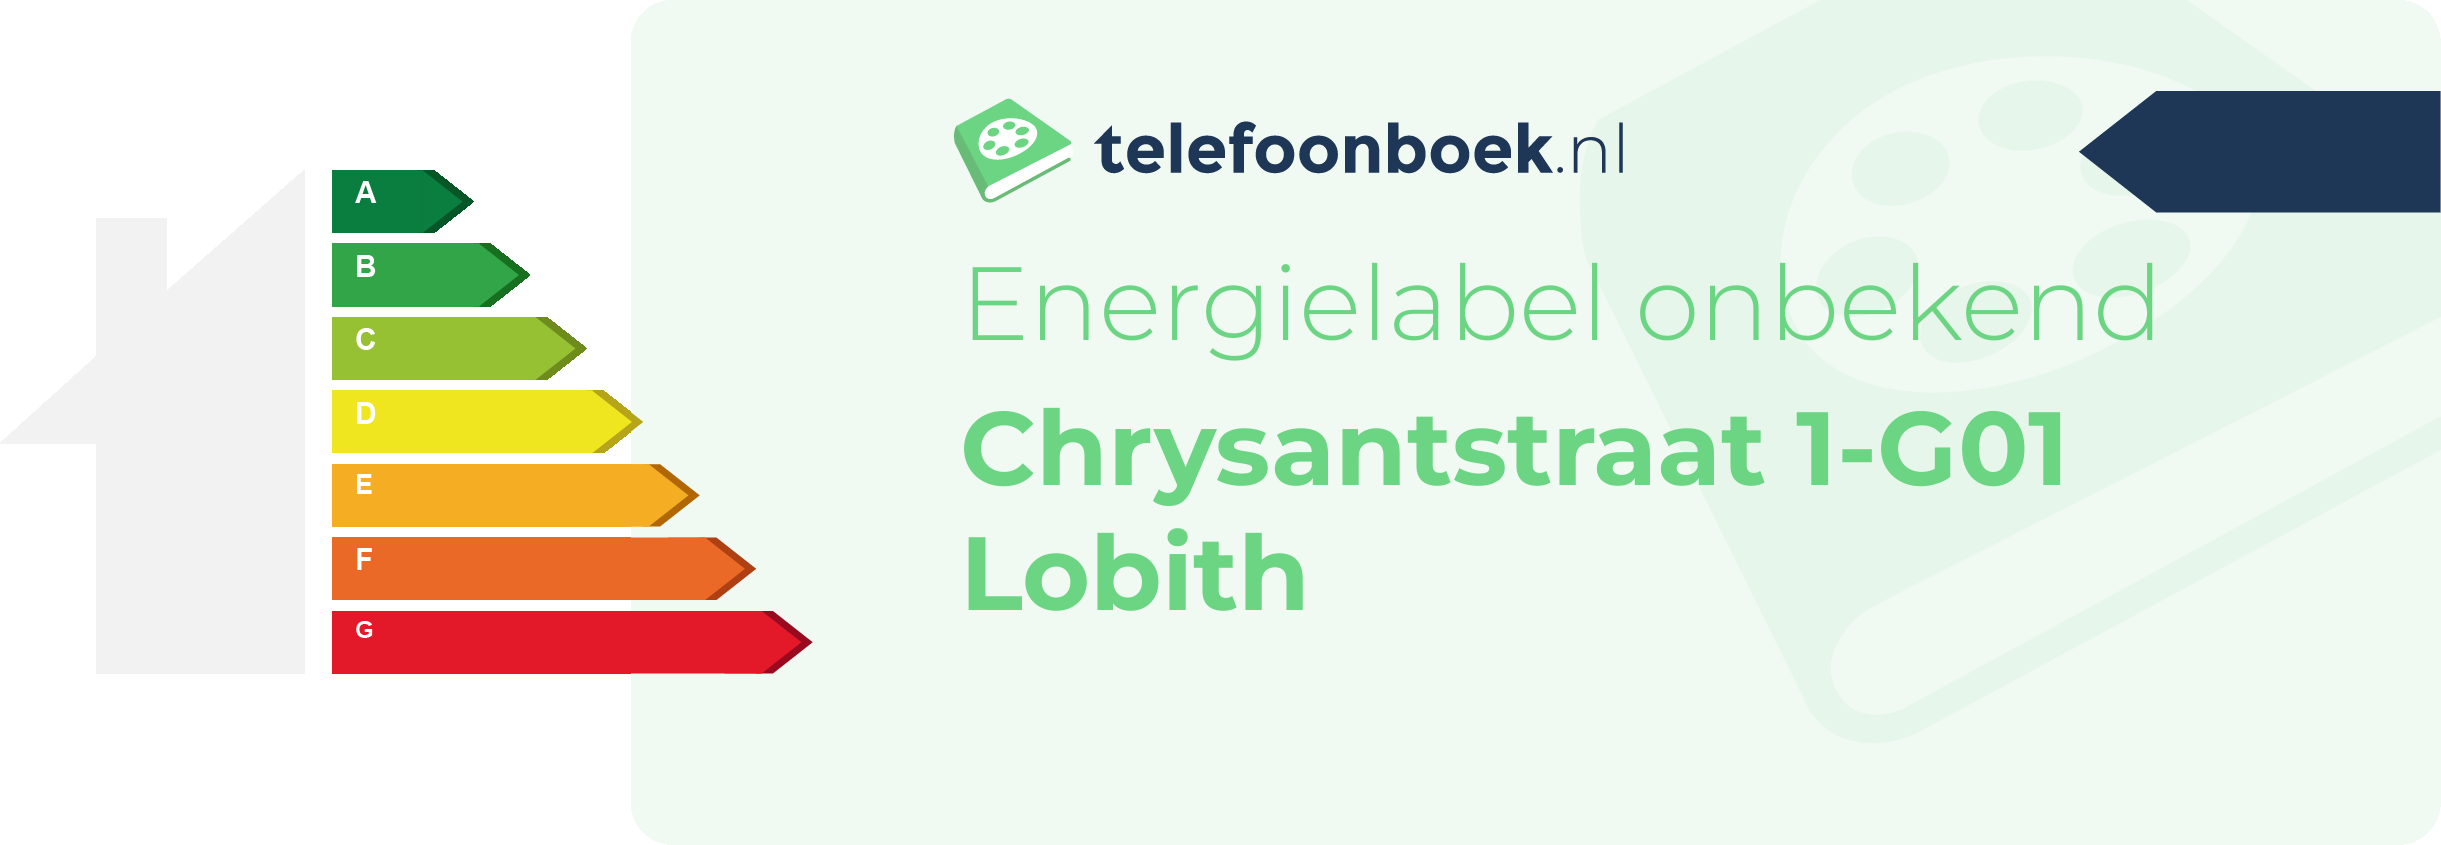 Energielabel Chrysantstraat 1-G01 Lobith